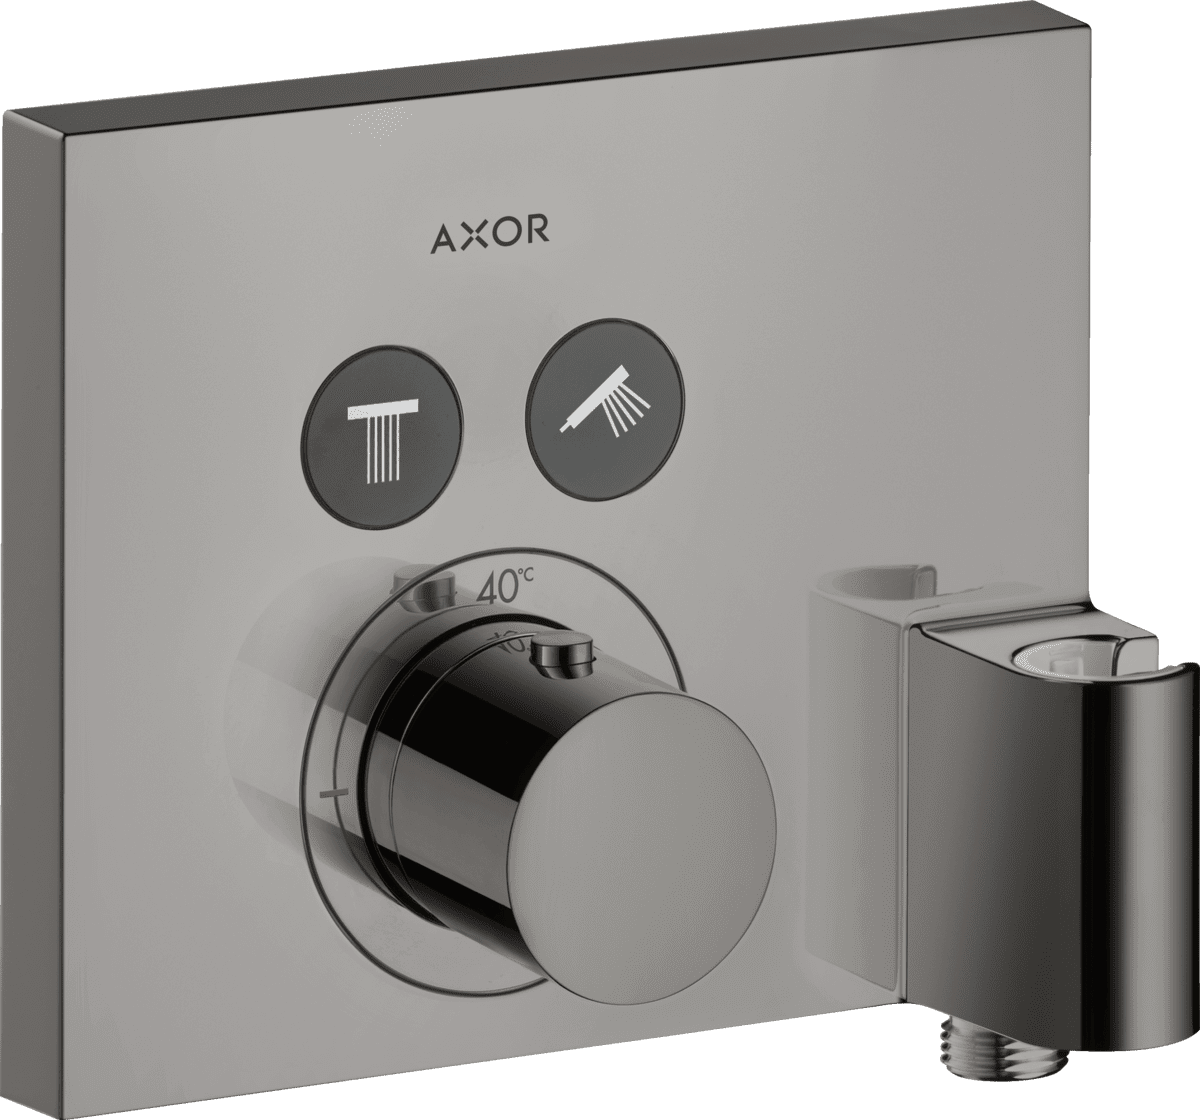 HANSGROHE AXOR ShowerSelect Termostat ankastre montaj, kare, 2 çıkış ve askılı gönye çıkış ile #36712330 - Parlak Siyah Krom resmi